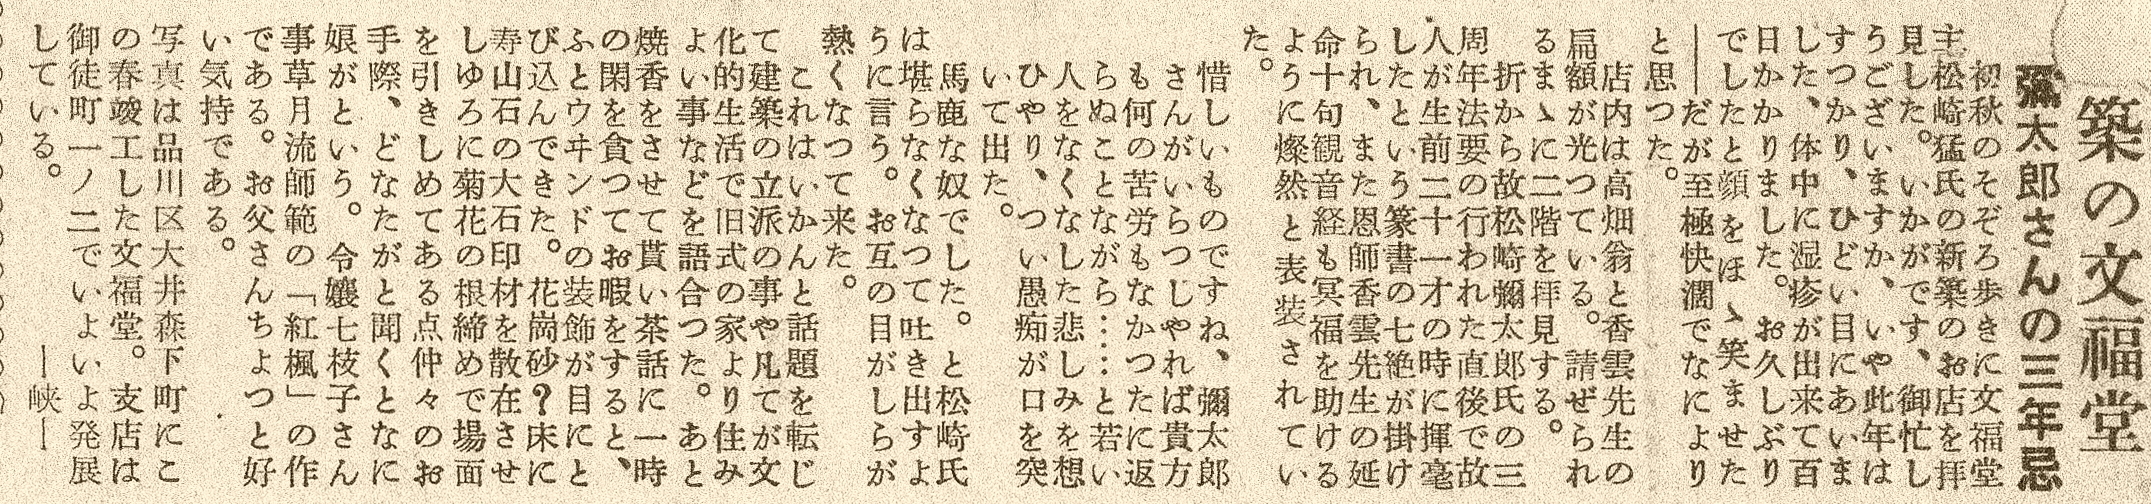 昭和31年「印の畑」記事